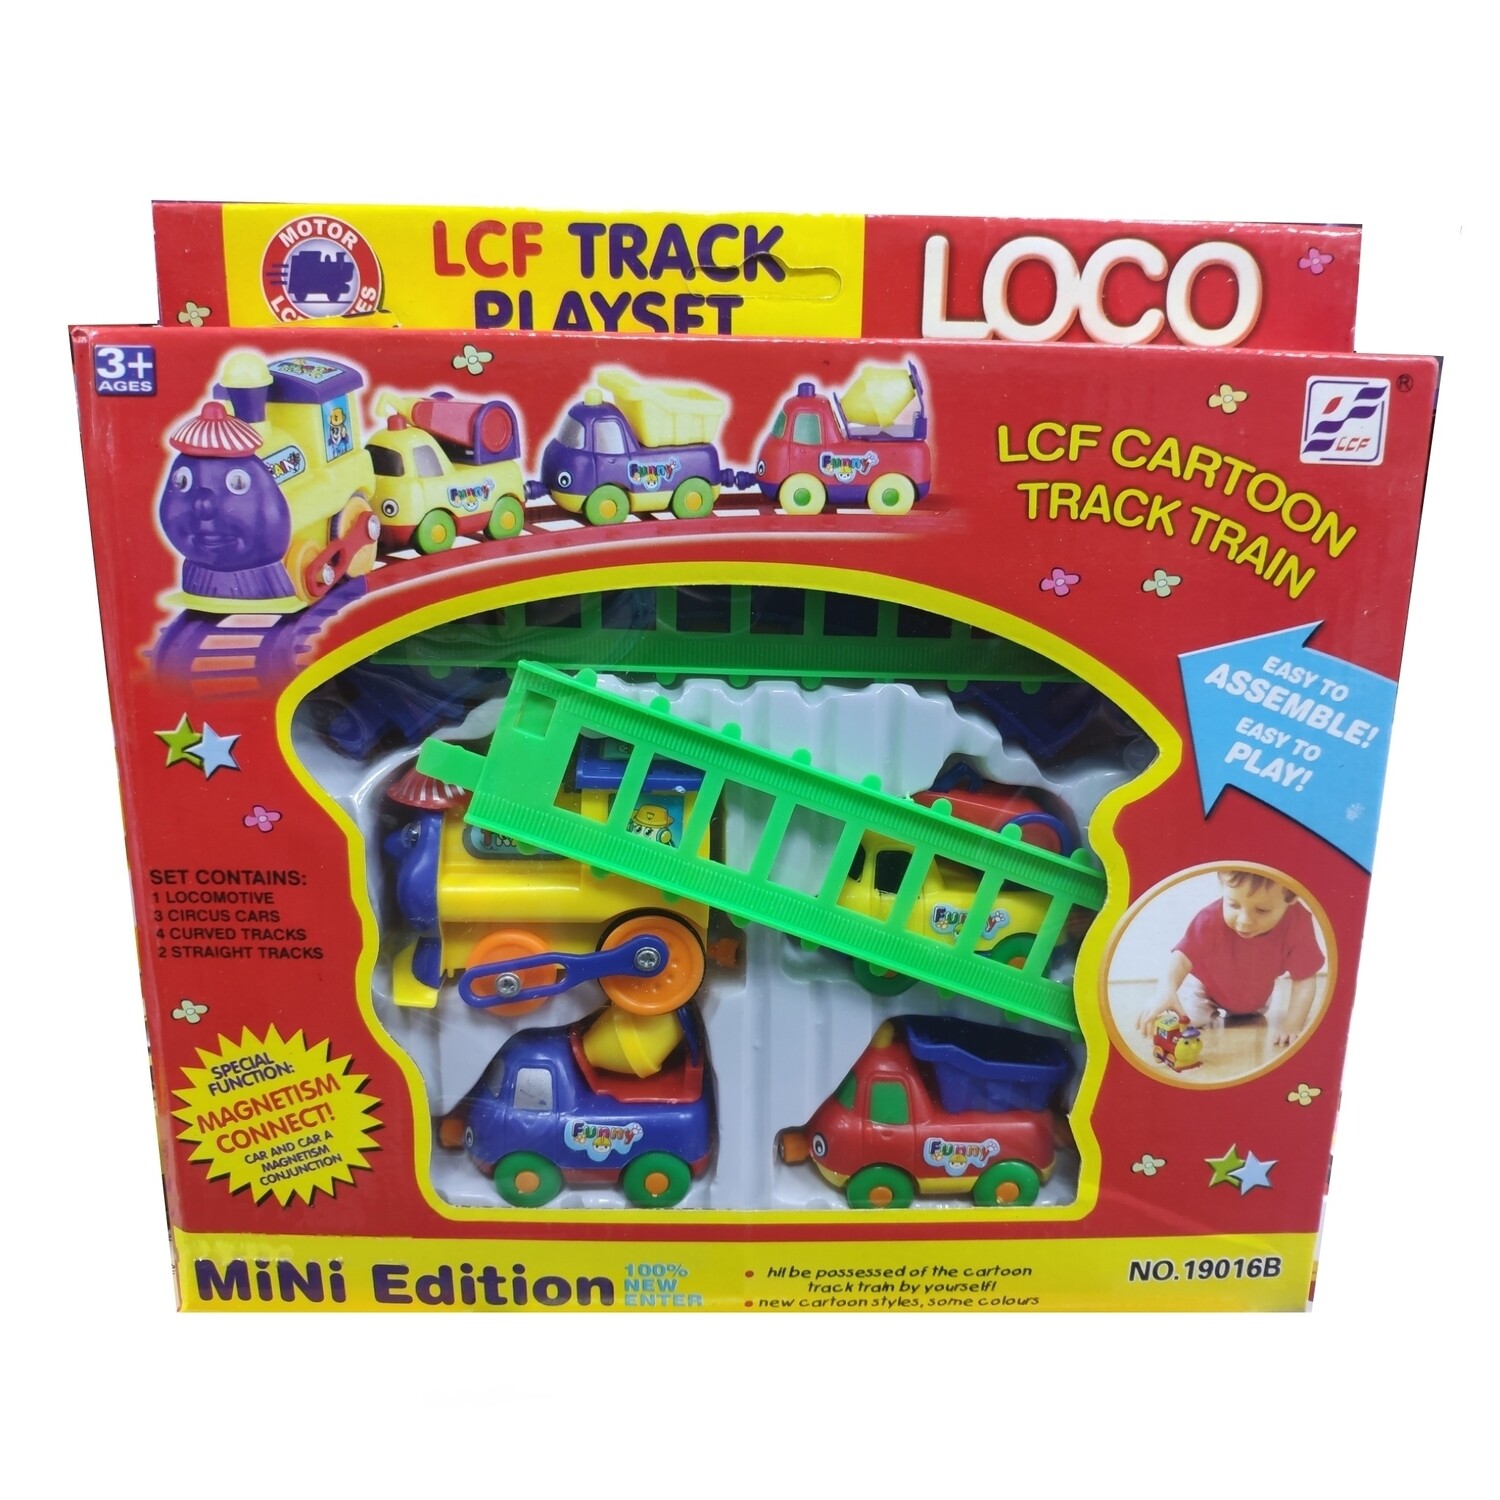 Детская железная дорога, паровозик,вагончики LOCO "LCF Track Playset" Track Train NO.19016B